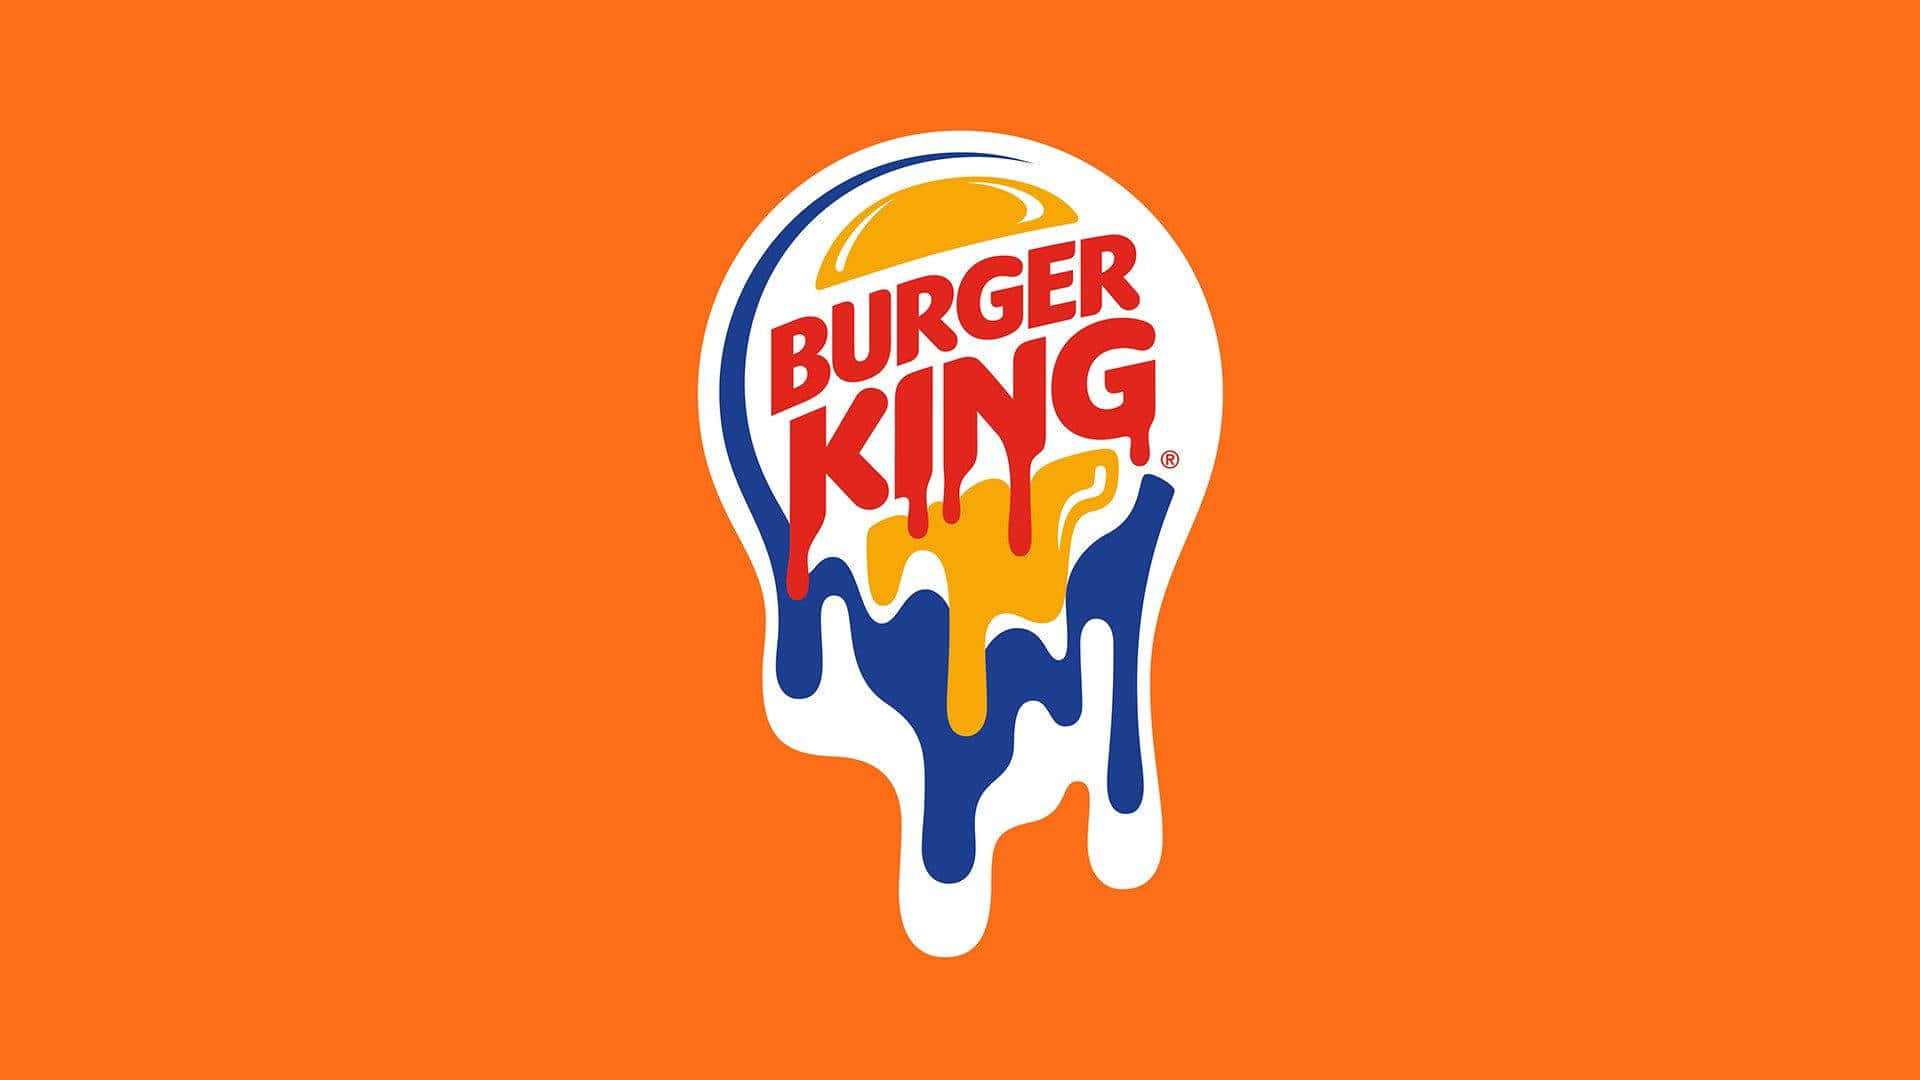 Burger King Logo On An Orange Background